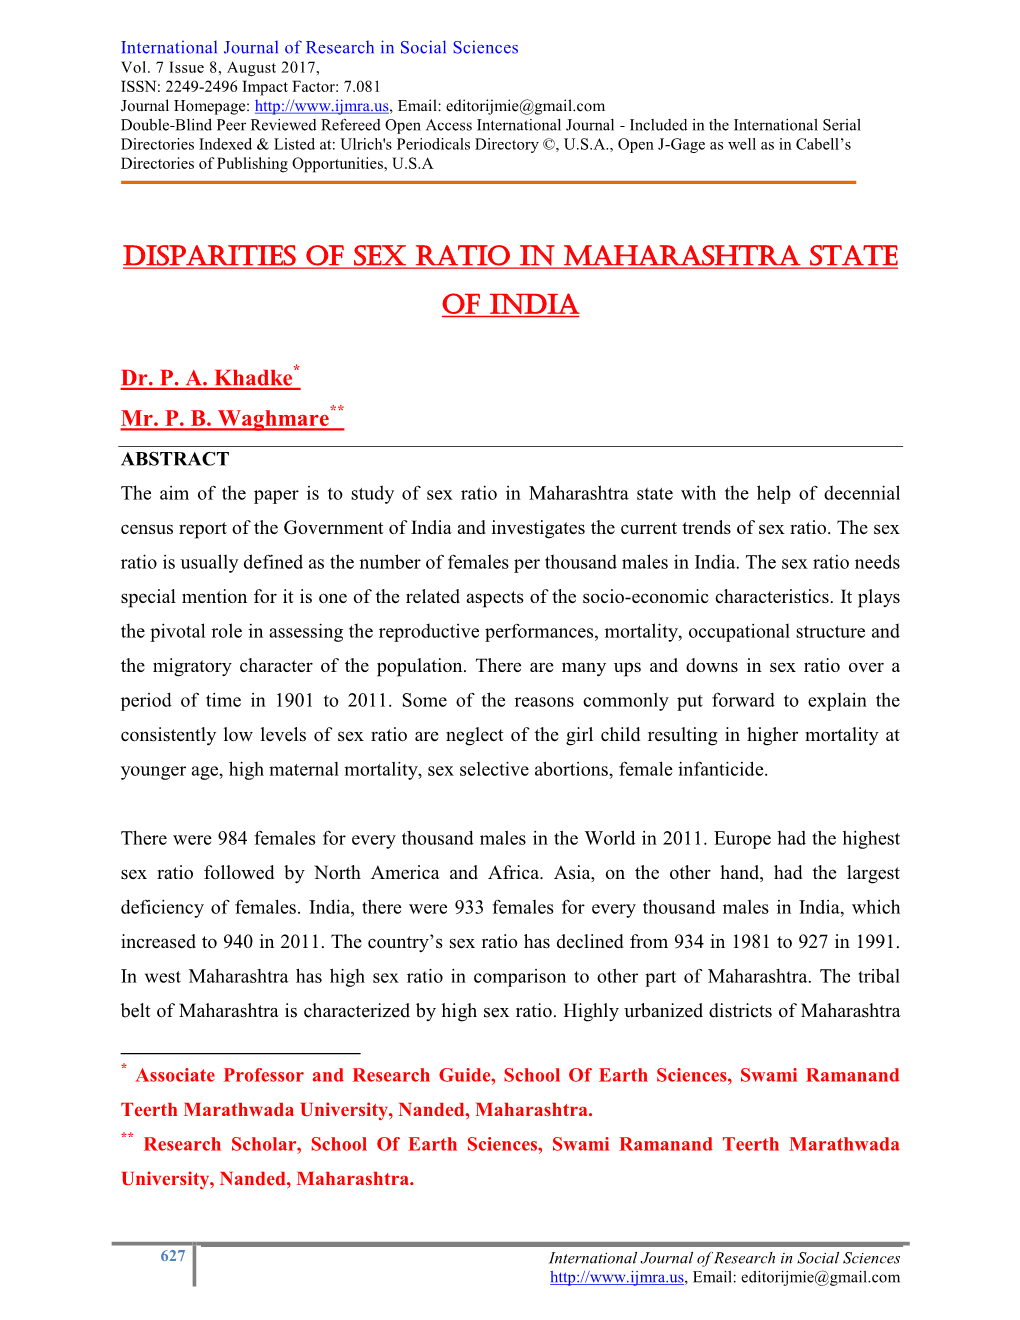 Disparities of Sex Ratio in Maharashtra State of India